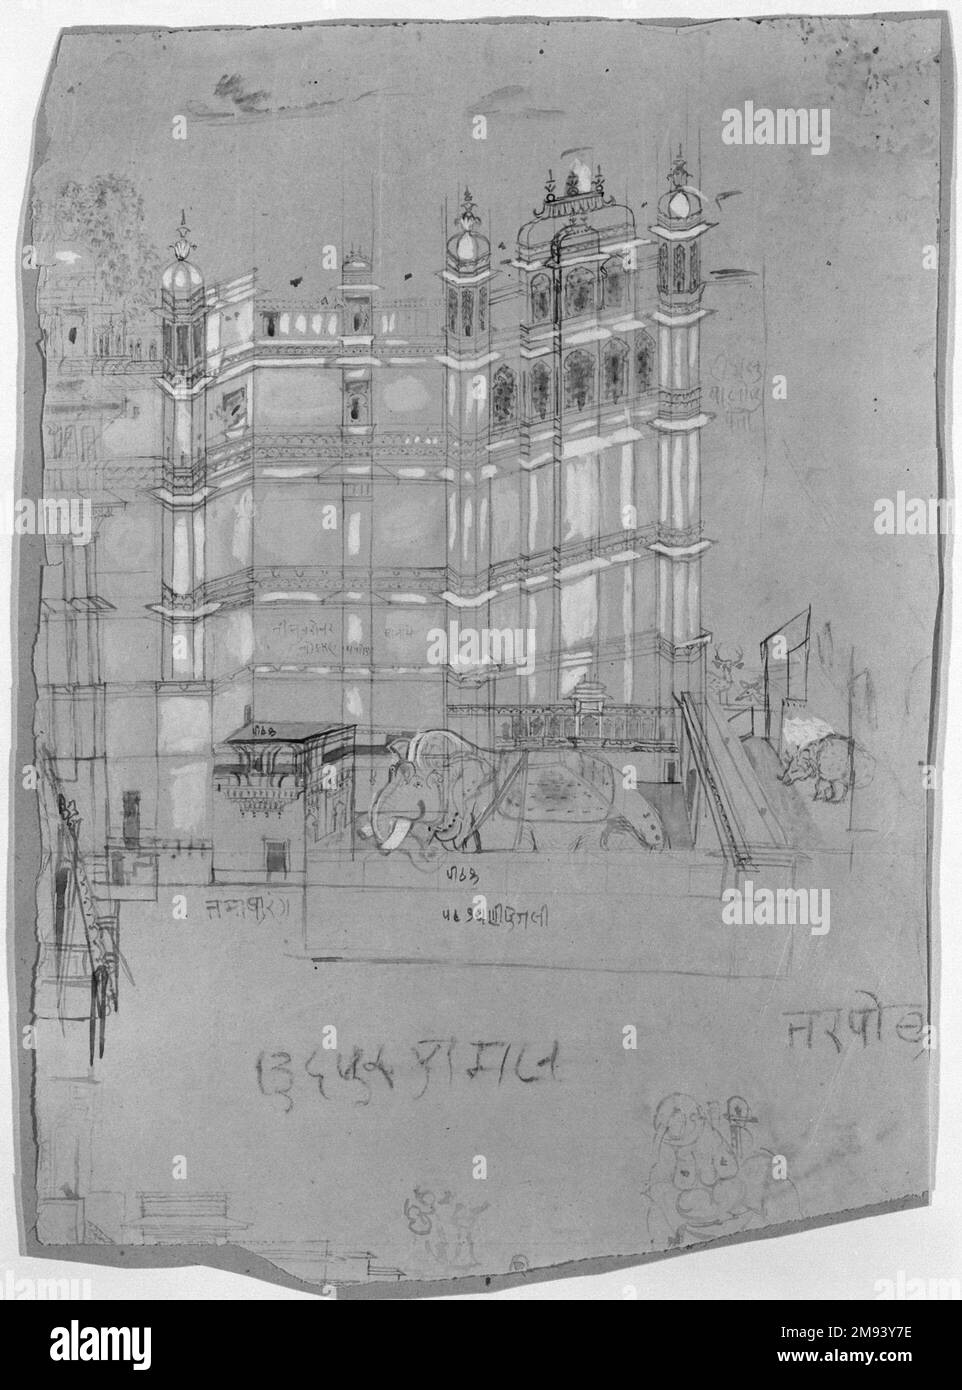 Palacio escena india. Escena del Palacio, ca. 1850. Tinta sepia y color en papel, hoja: 14 3/4 x 10 1/2 pulg. (37,5 x 26,7 cm). Asiático Art ca. 1850 Foto de stock